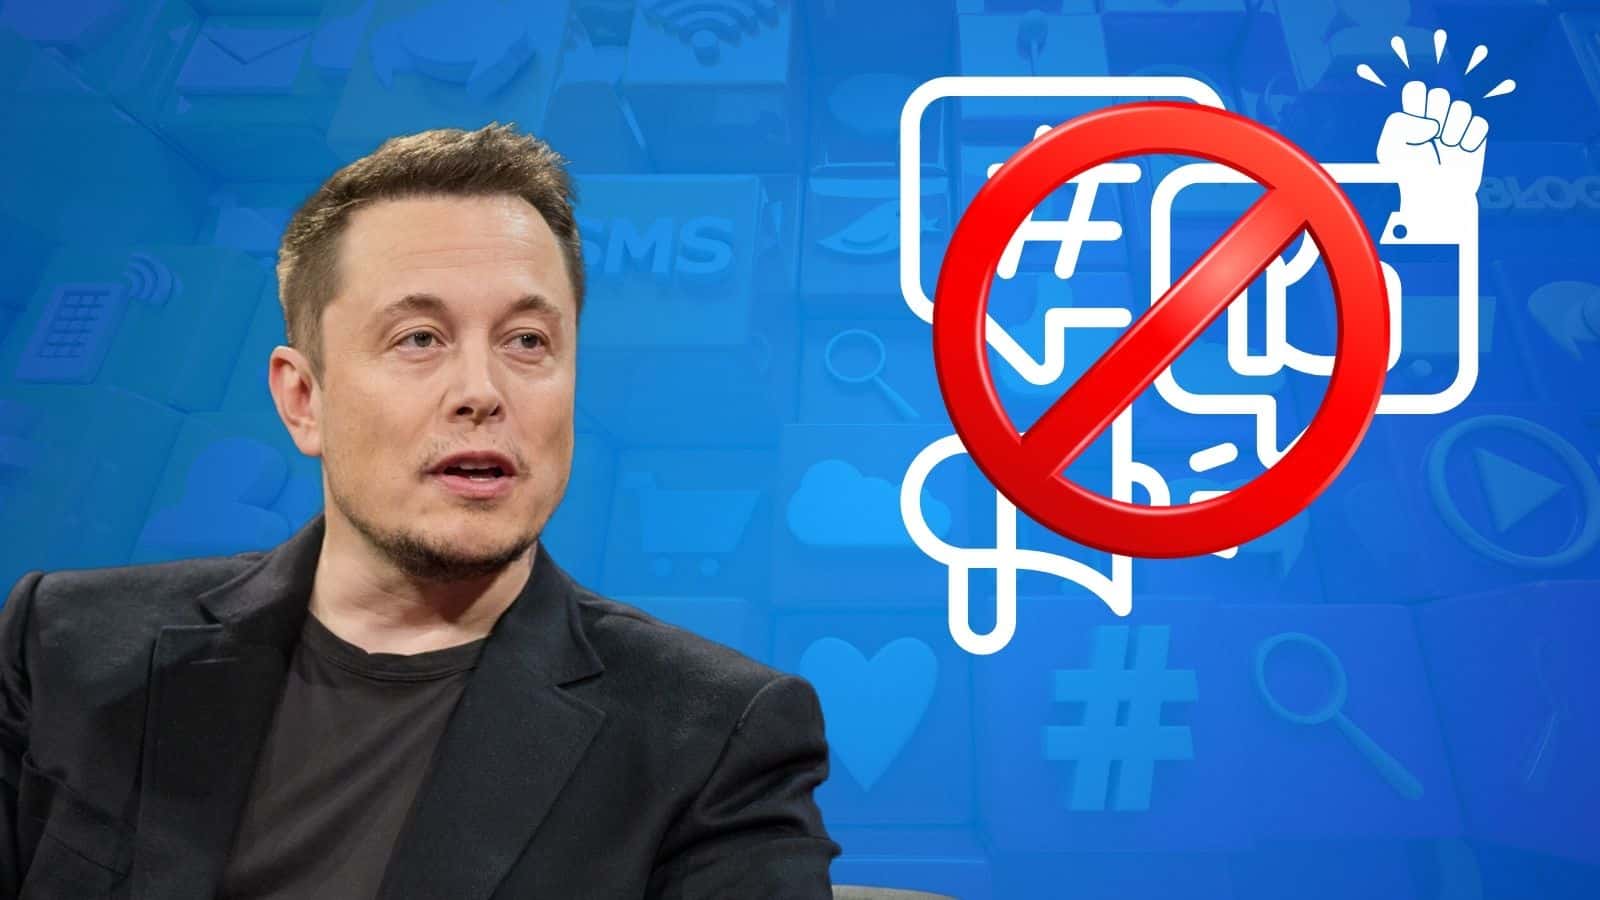 Elon Musk: l'imprenditore rimuove post estremisti su X